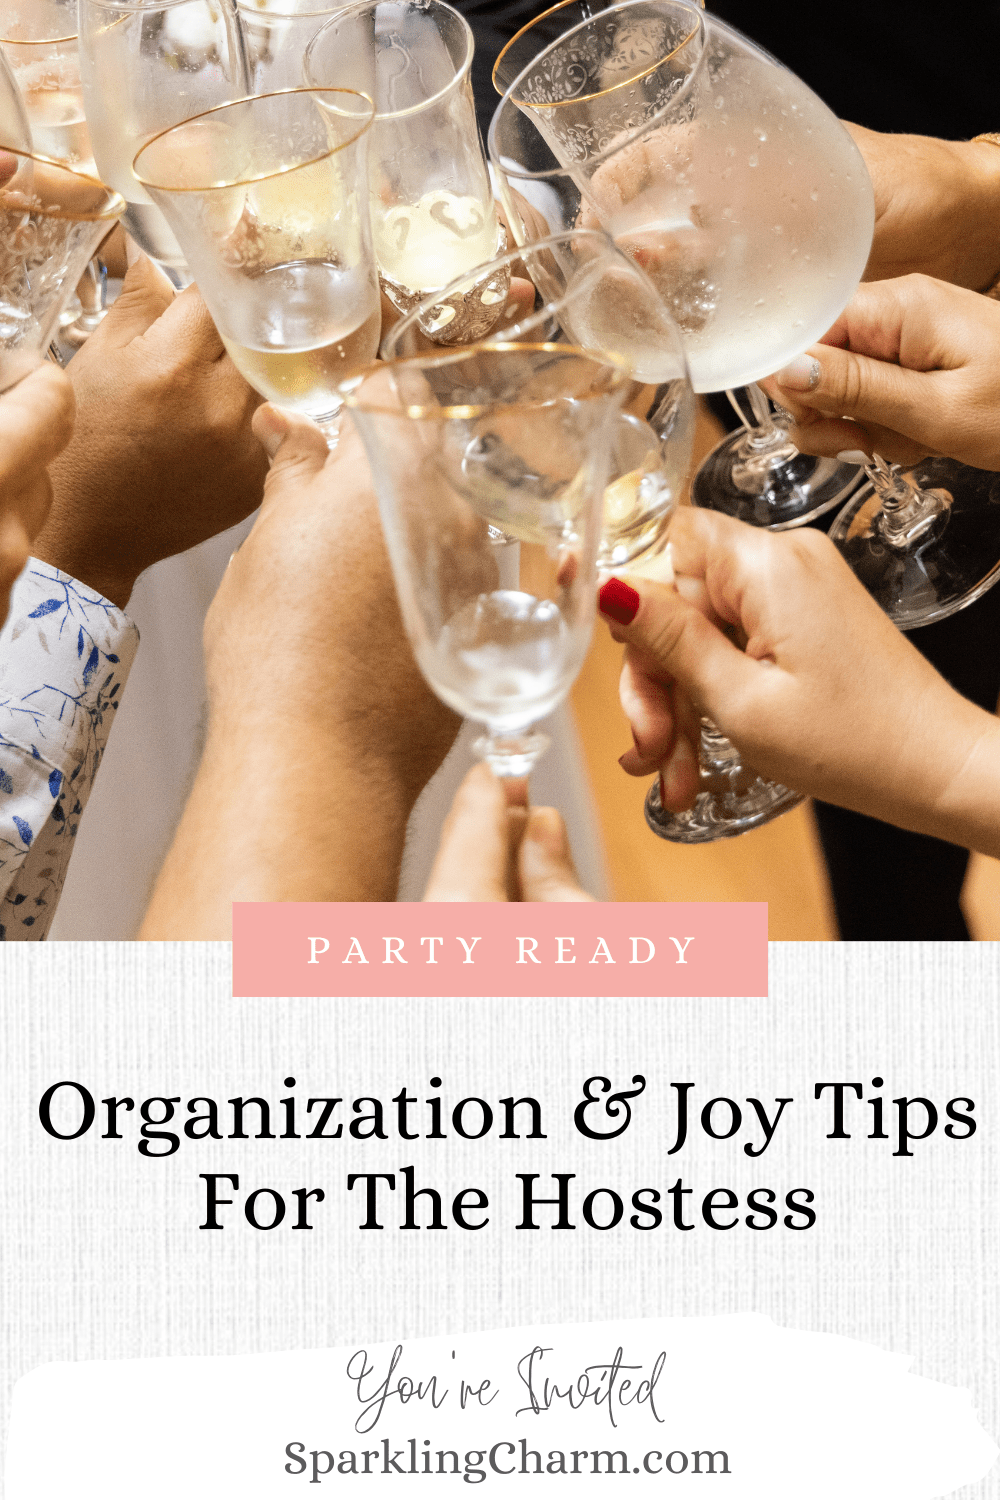 Organization & Joy Tips For The Hostess